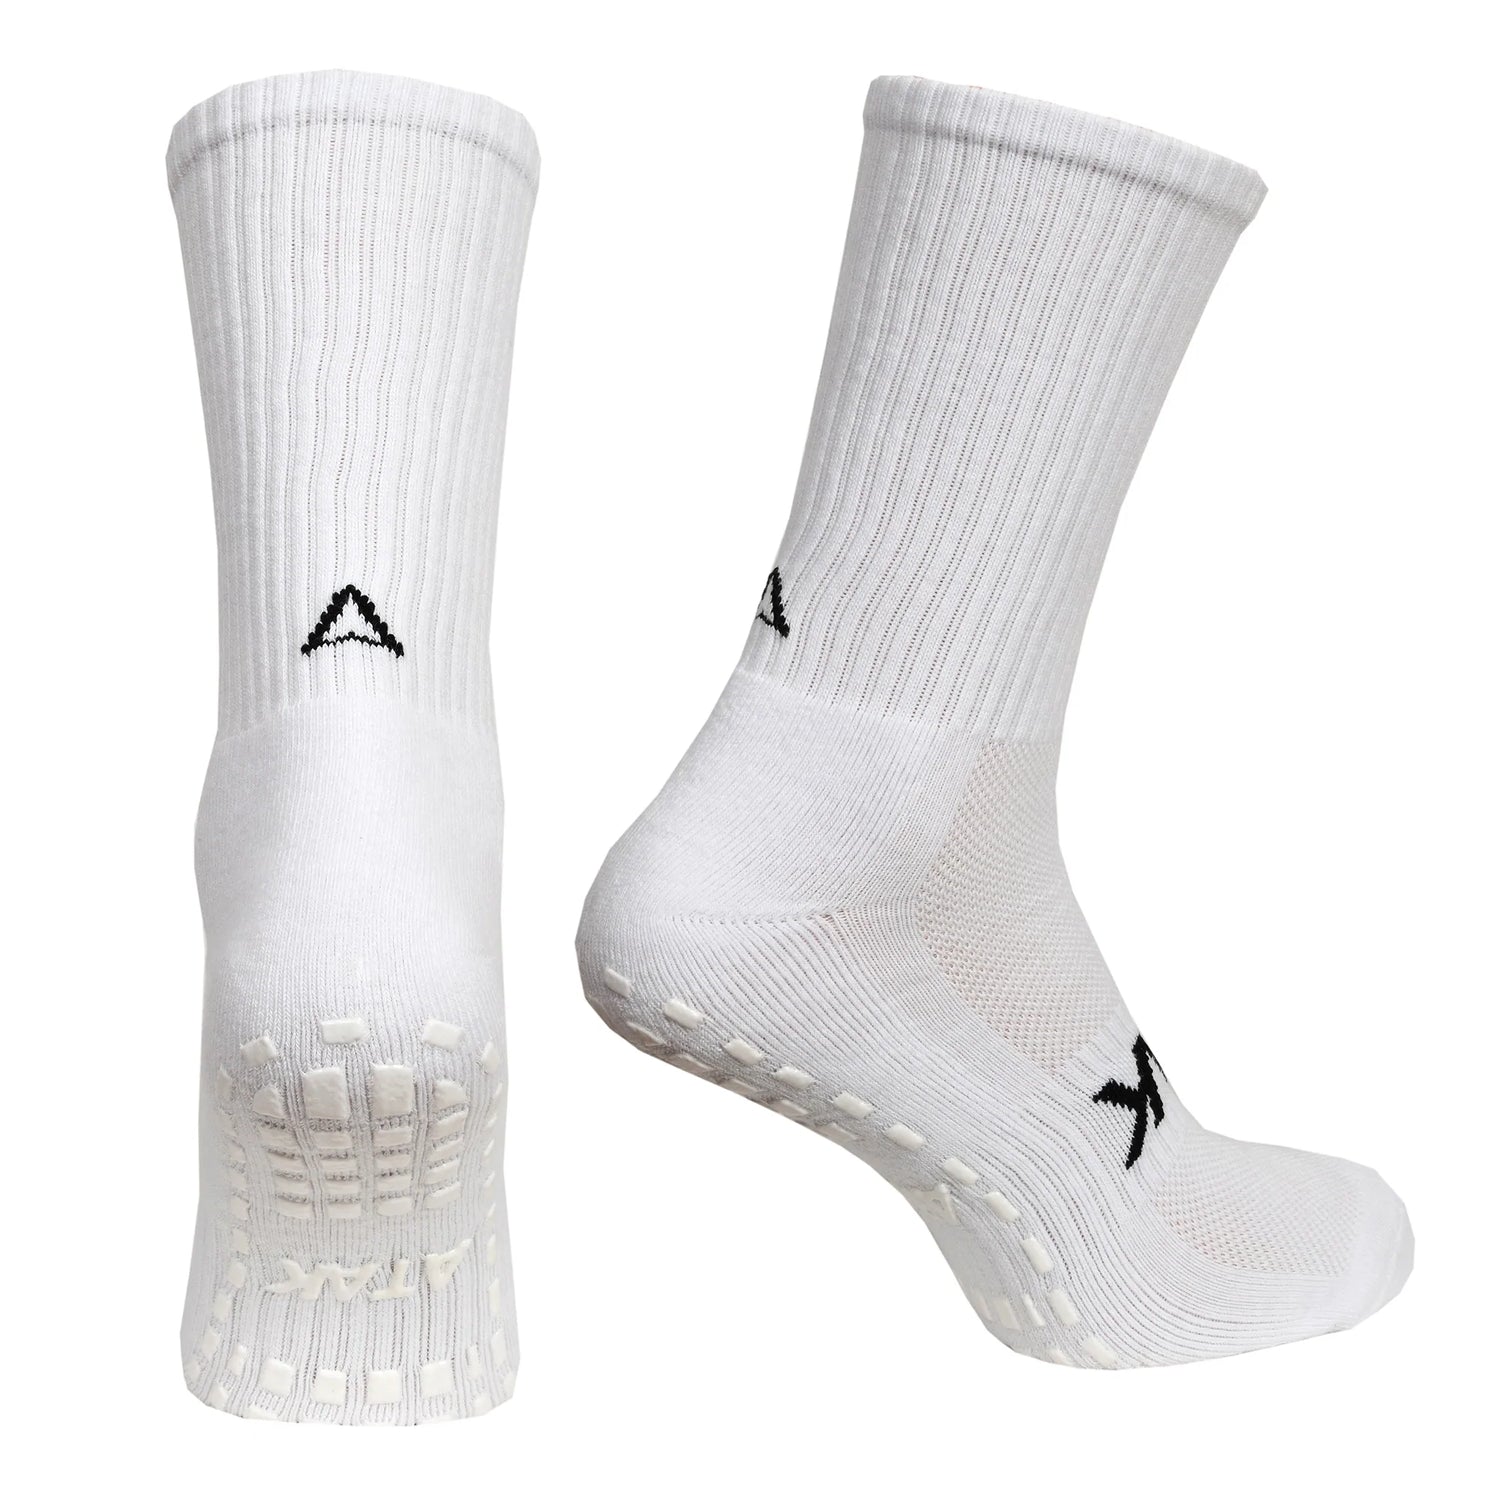 ATAK Shox Mid-Leg Grip Socks